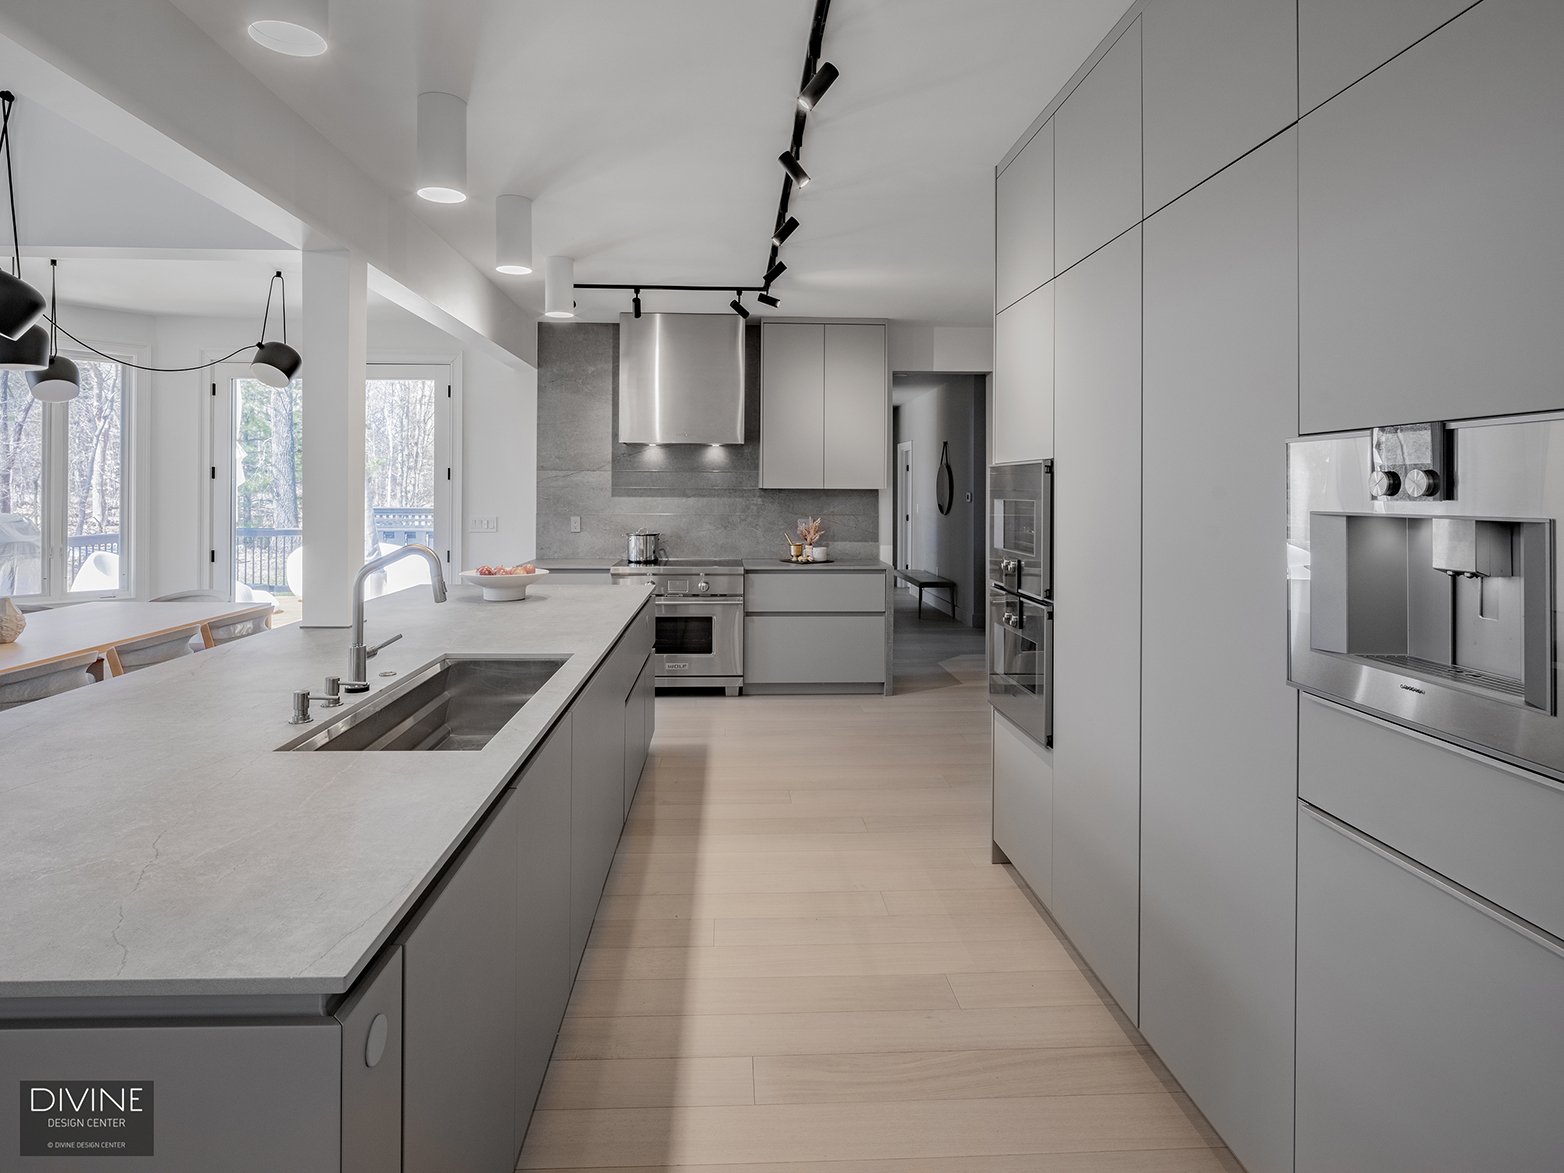 31. divine-design-center-boxford-modern-kitchen-with-gaggenau-appliances.jpg